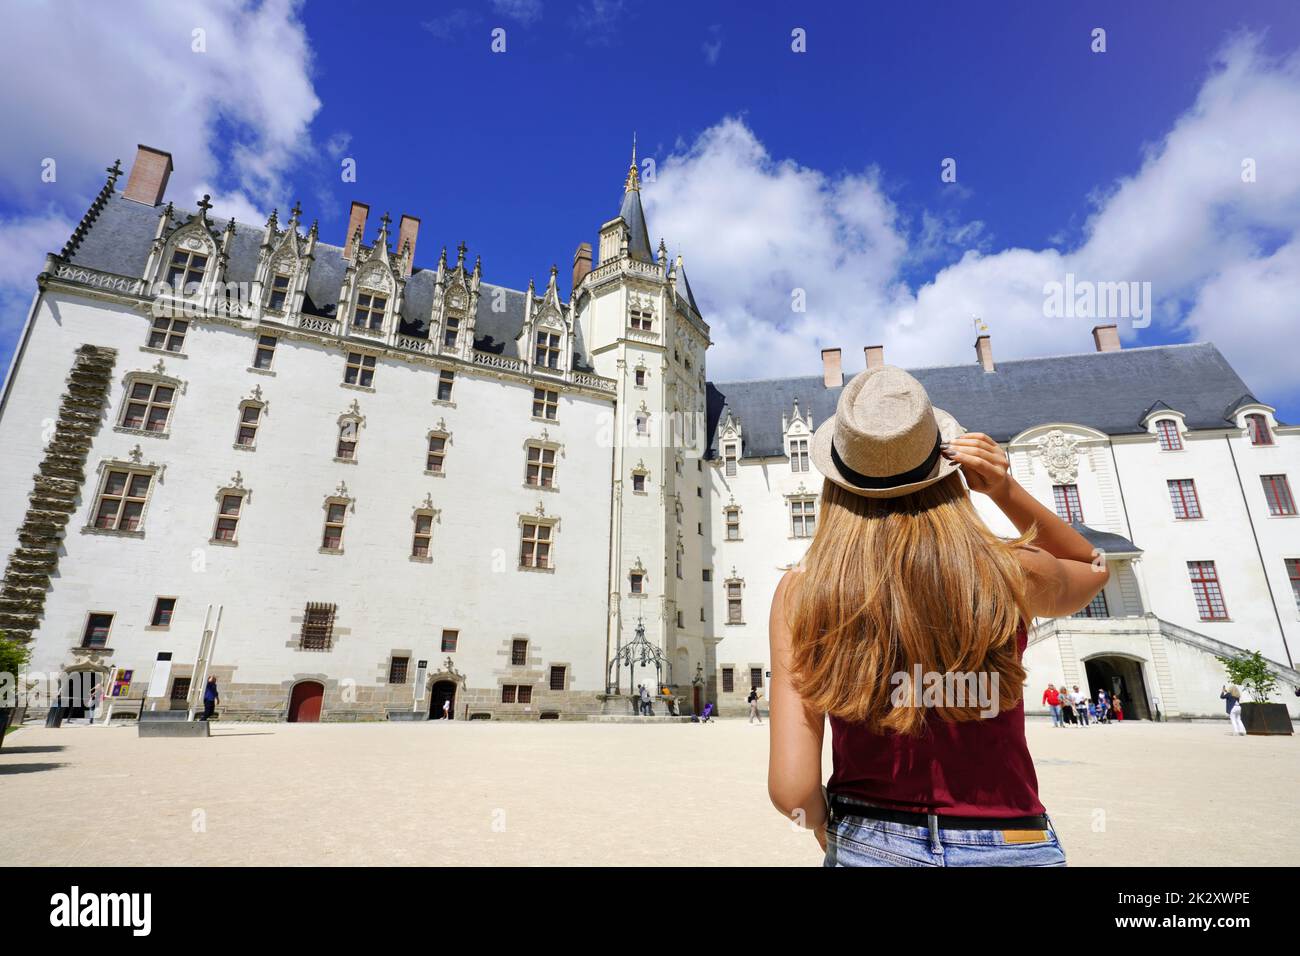 Young traveler woman visiting the ChÃ¢teau des ducs de Bretagne a castle in the city of Nantes, France Stock Photo